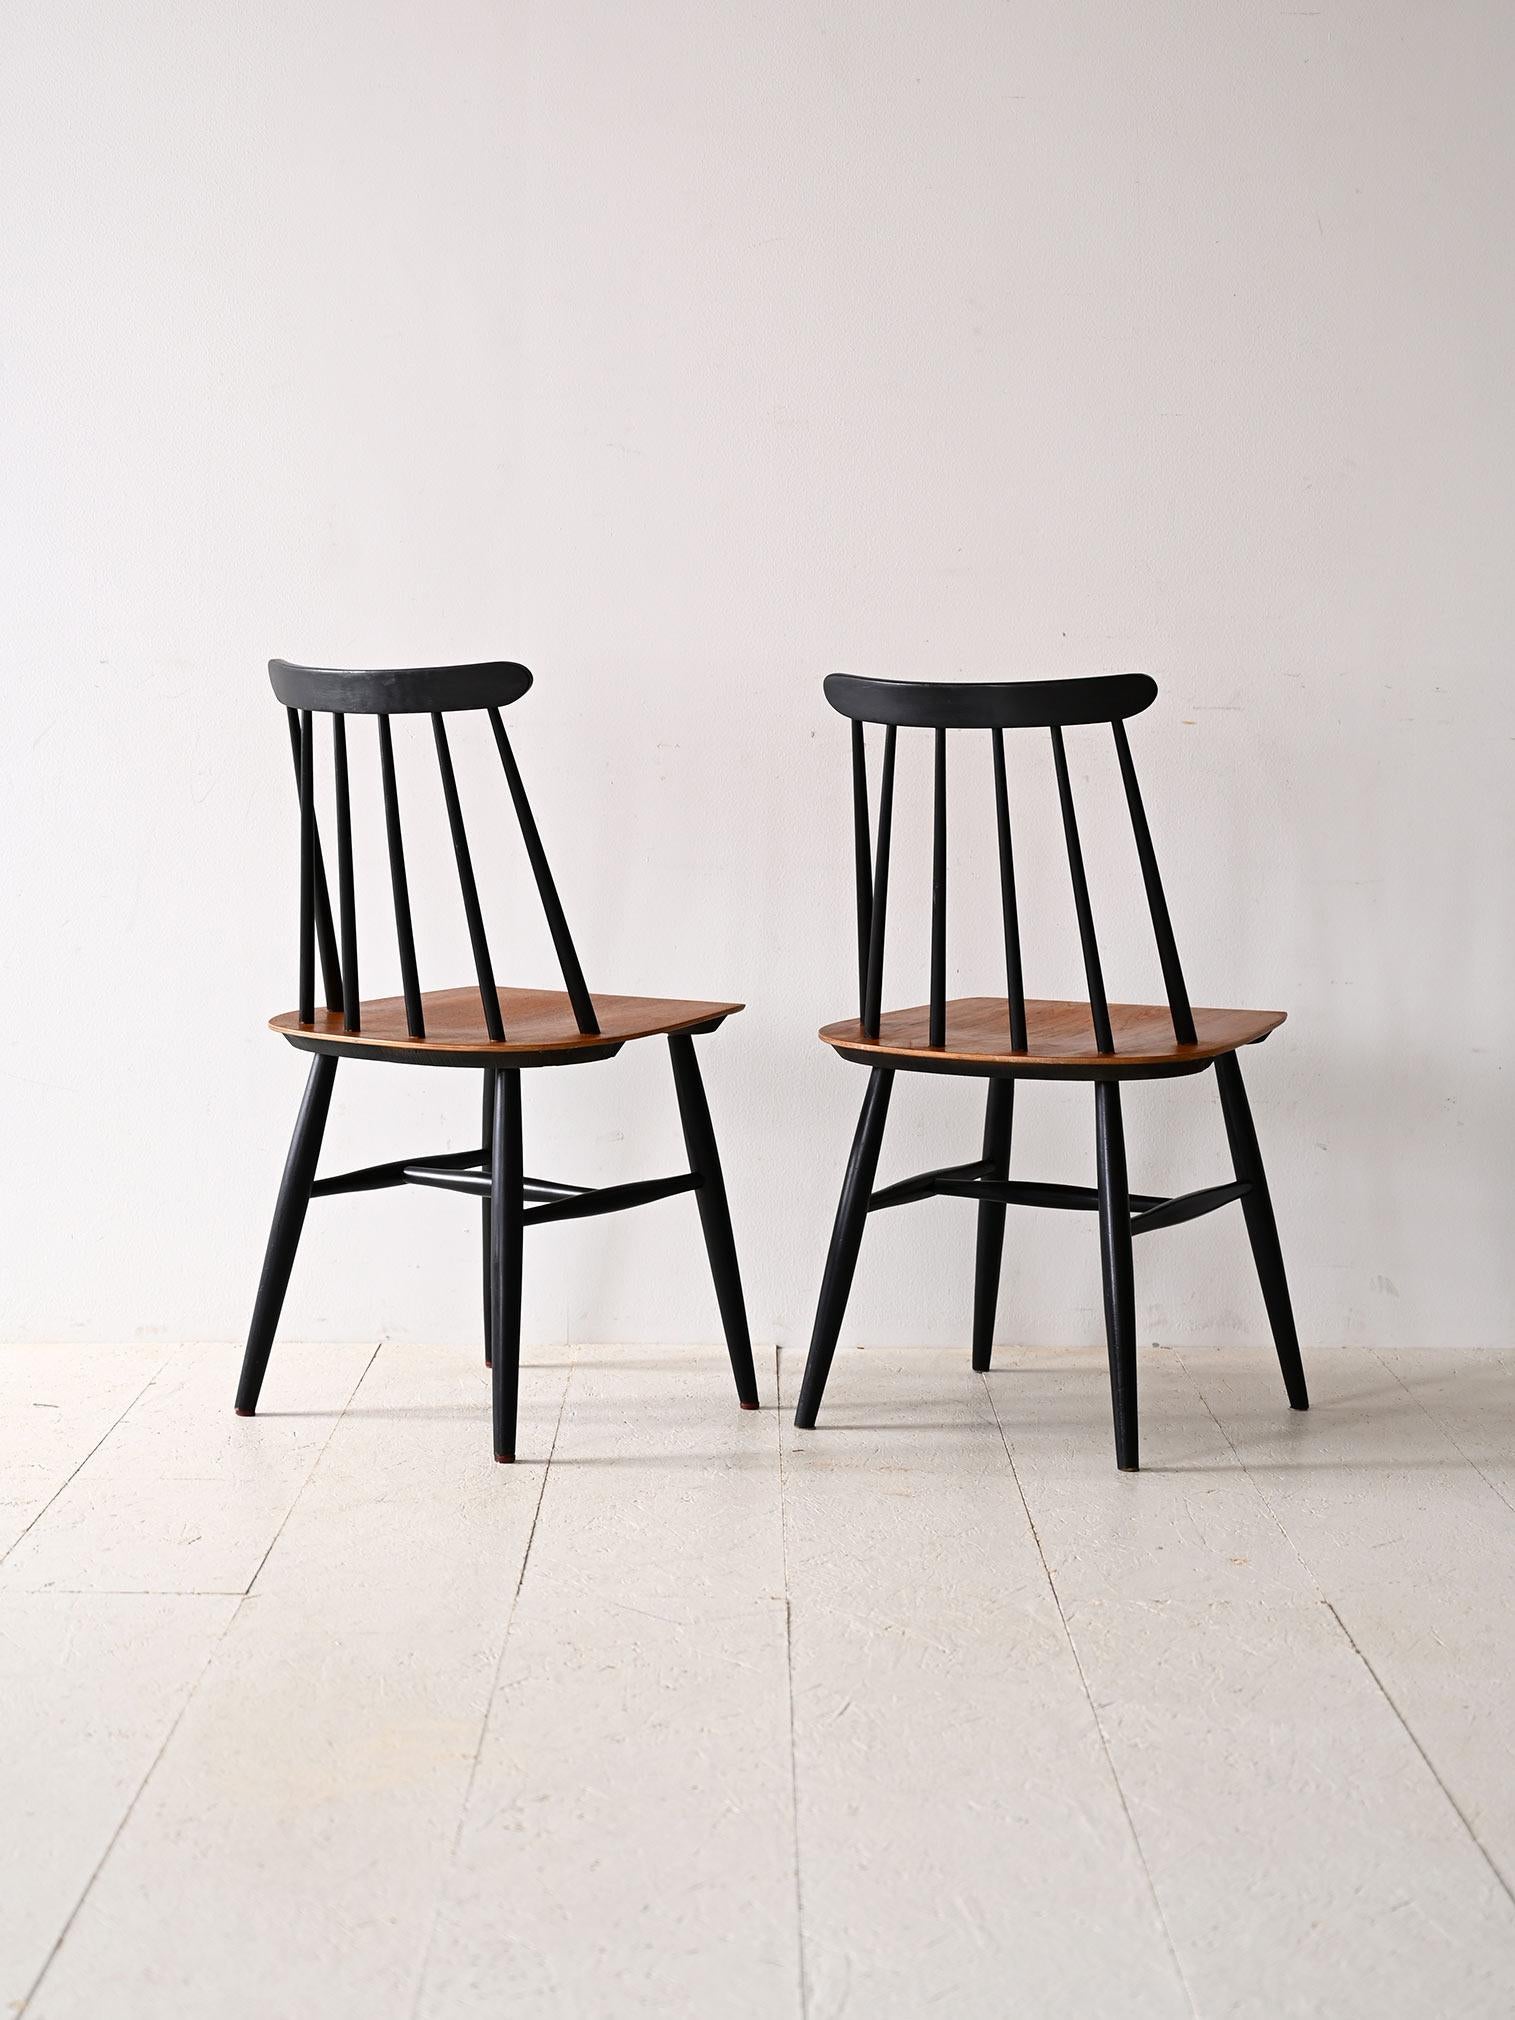 Chaise vintage Fannett, design finlandais.

Un modèle de chaise connu et imité dans le monde entier. Il se distingue par les lignes douces et organiques des lattes de bois du dossier et du bois courbé de l'assise.
Grâce au contraste entre le bois de